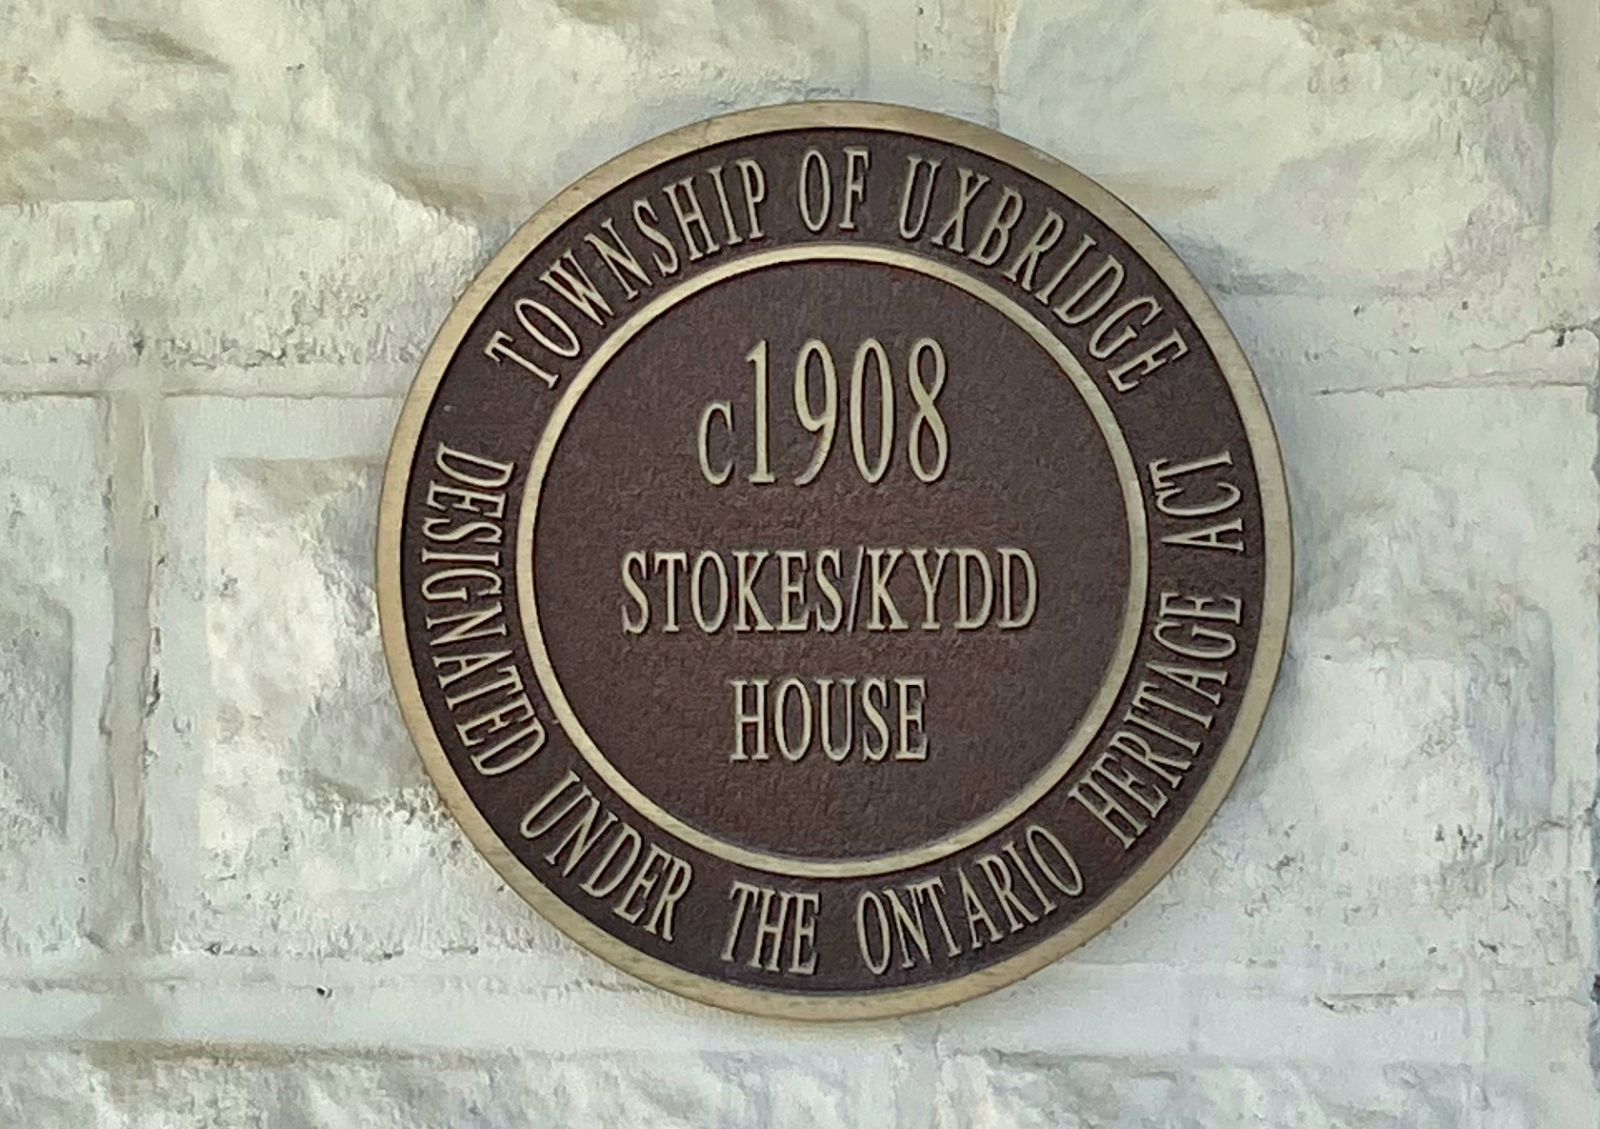 Stokes/Kydd House Uxbridge